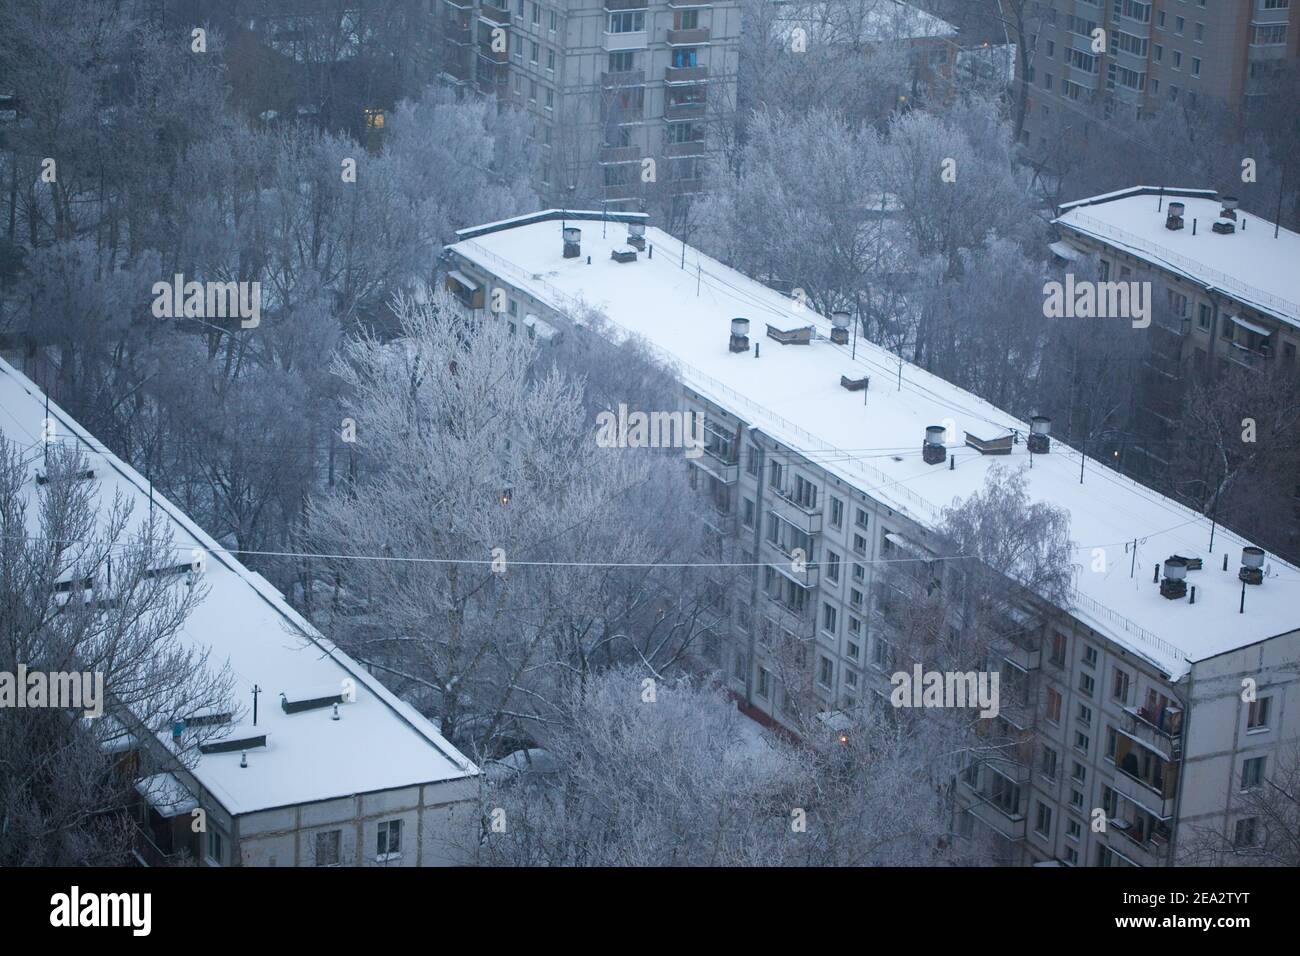 MOSKAU, RUSSLAND: Blick von oben auf fünfstöckige Gebäude im Winter. Blaue Tonung. Russisches Frostkonzept Stockfoto